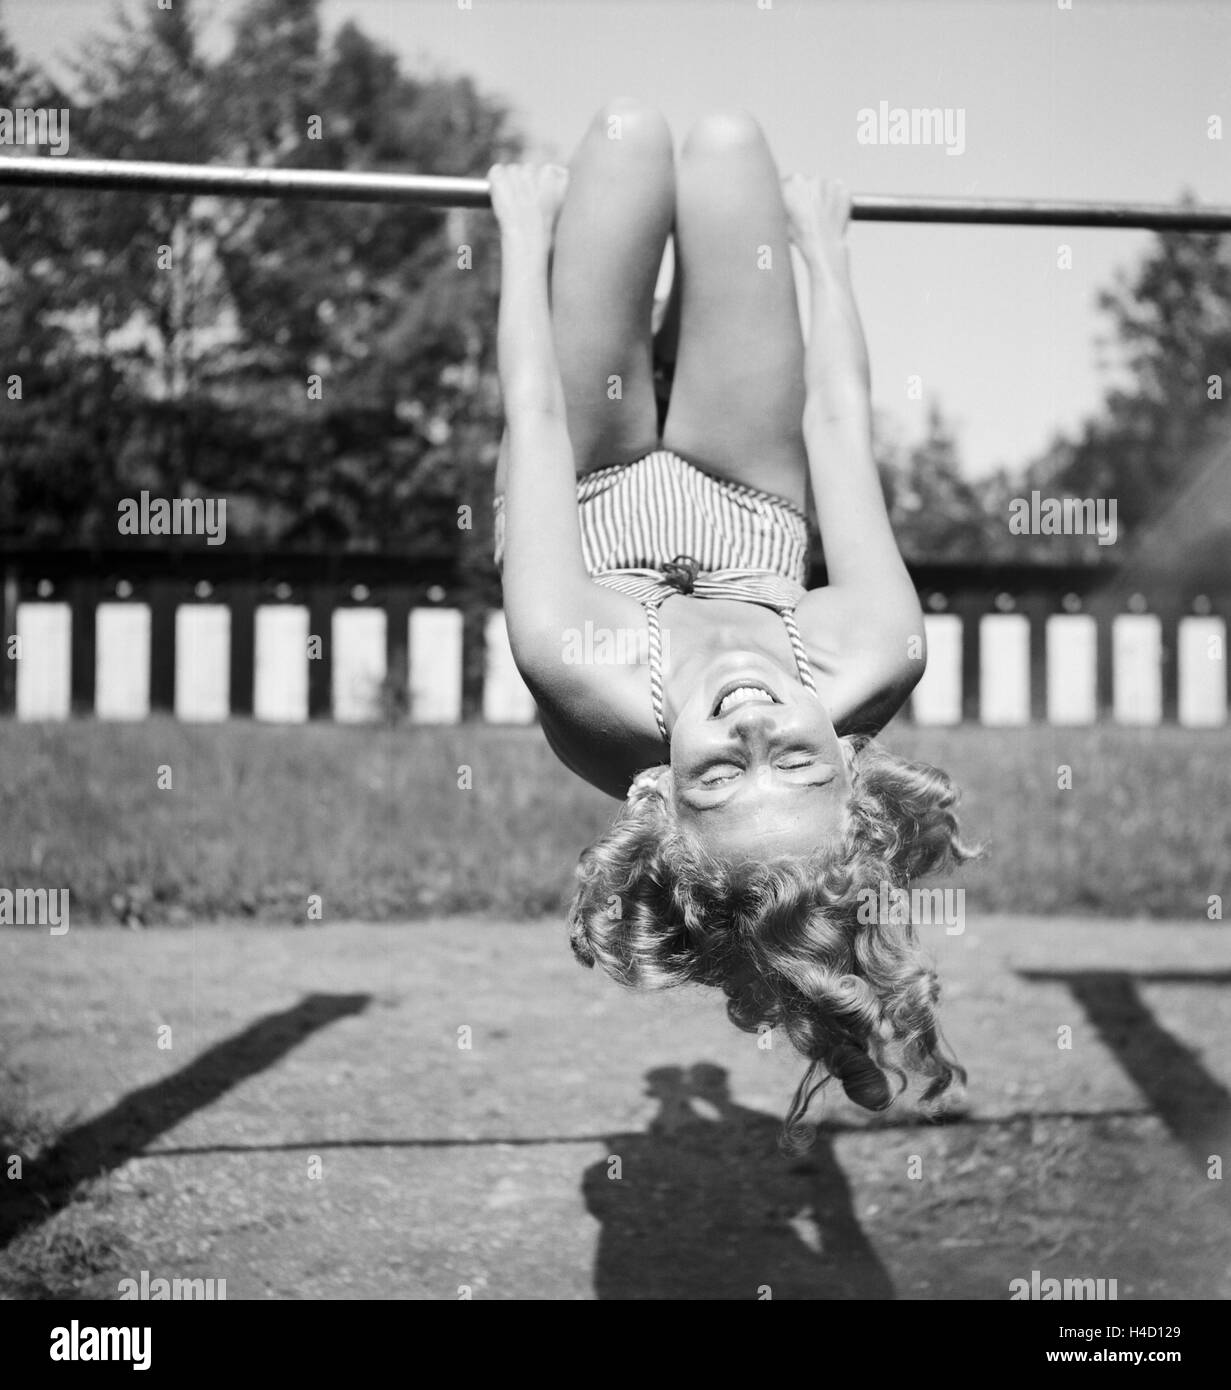 Eine junge Frau turnt auf einem Spielplatz in der Wachau in Österreich, Deutschland 1930er Jahre. A young woman doing gymnastics on a playground in the Wachau area in Austria, Germany 1930s. Stock Photo